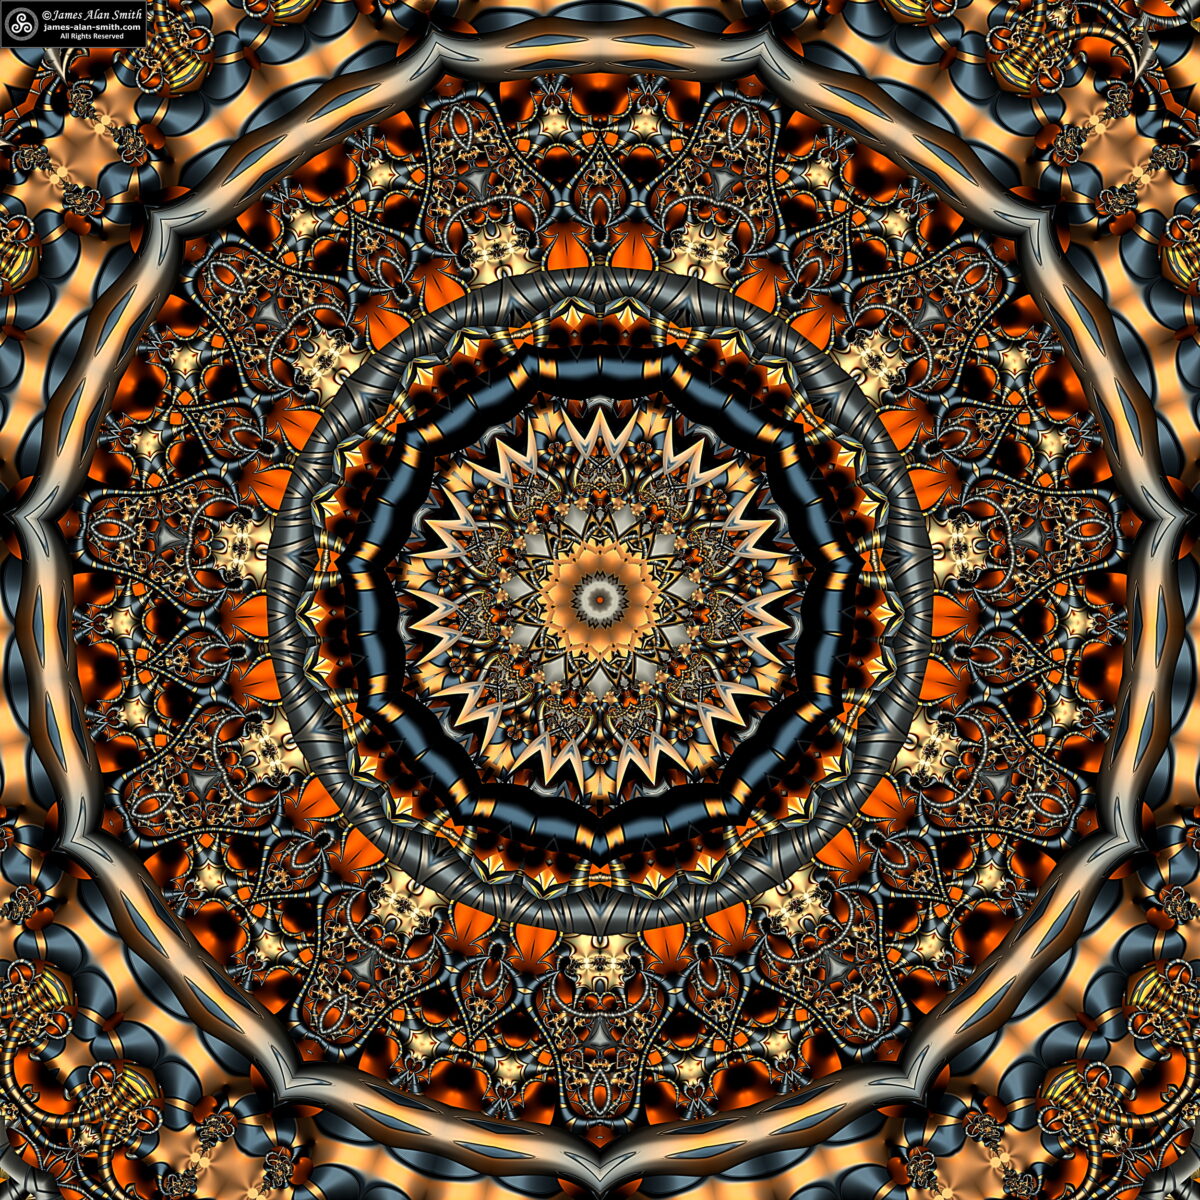 Metallic Lace Mandala: Artwork by James Alan Smith